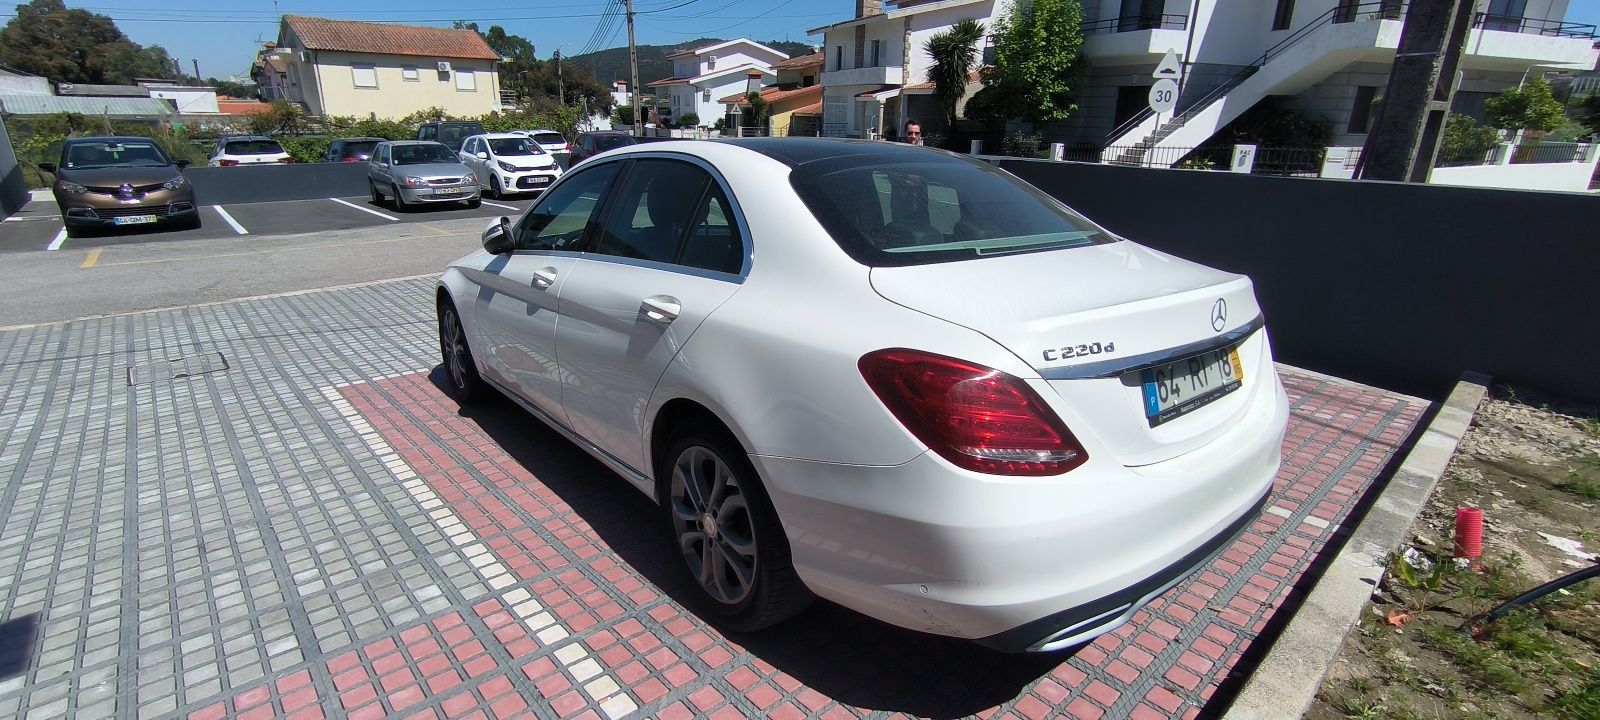 Mercedes C220 para venda